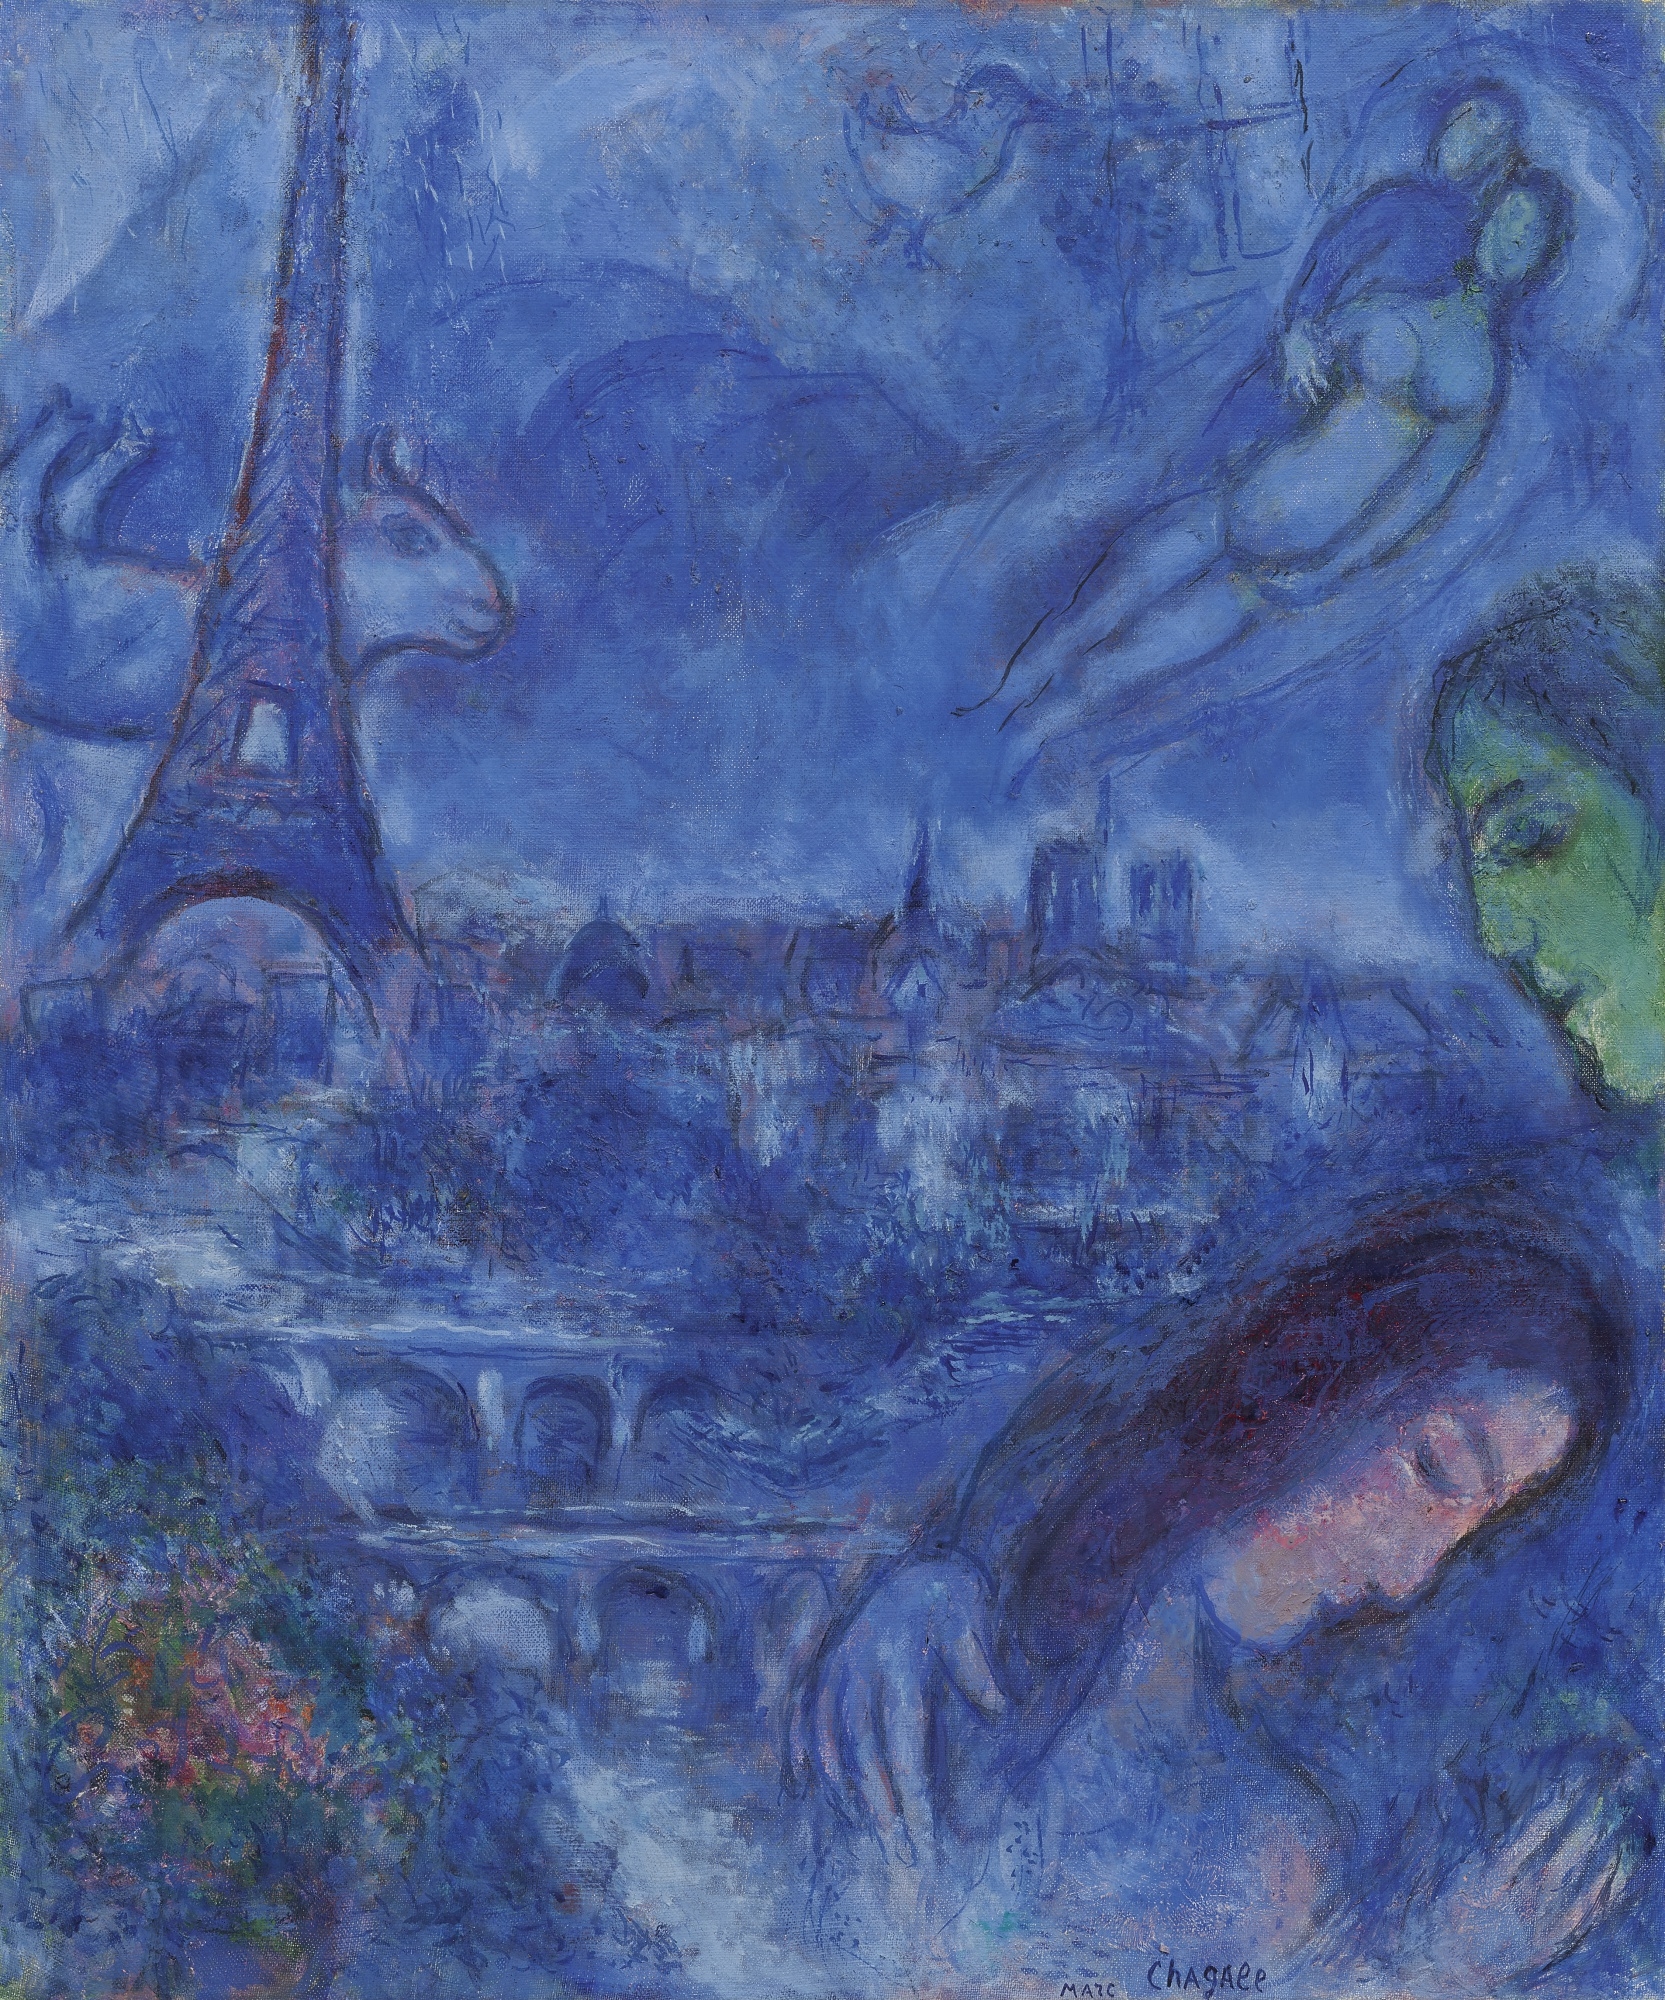 Paysage de Paris en bleu by Marc Chagall, 1967